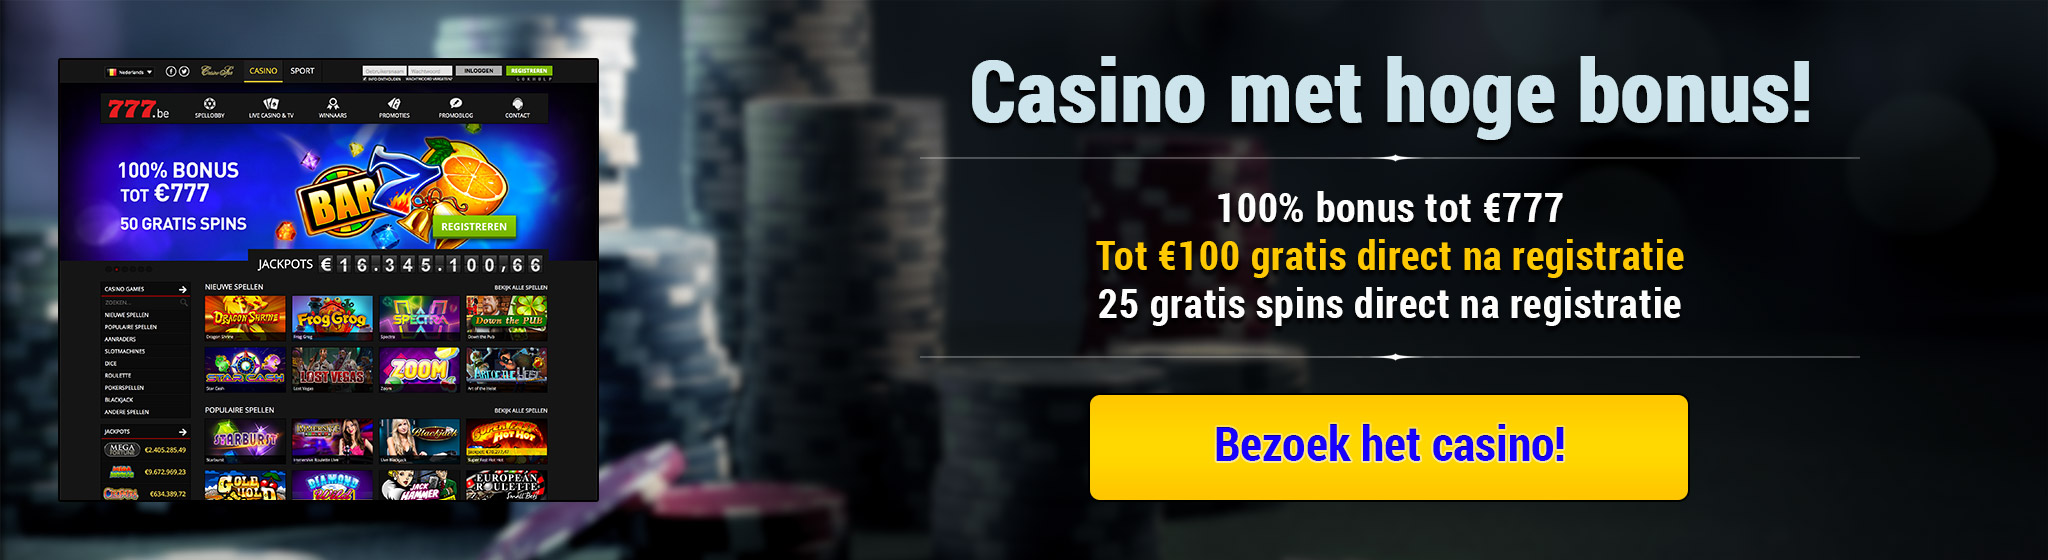 Casino met hoge bonus